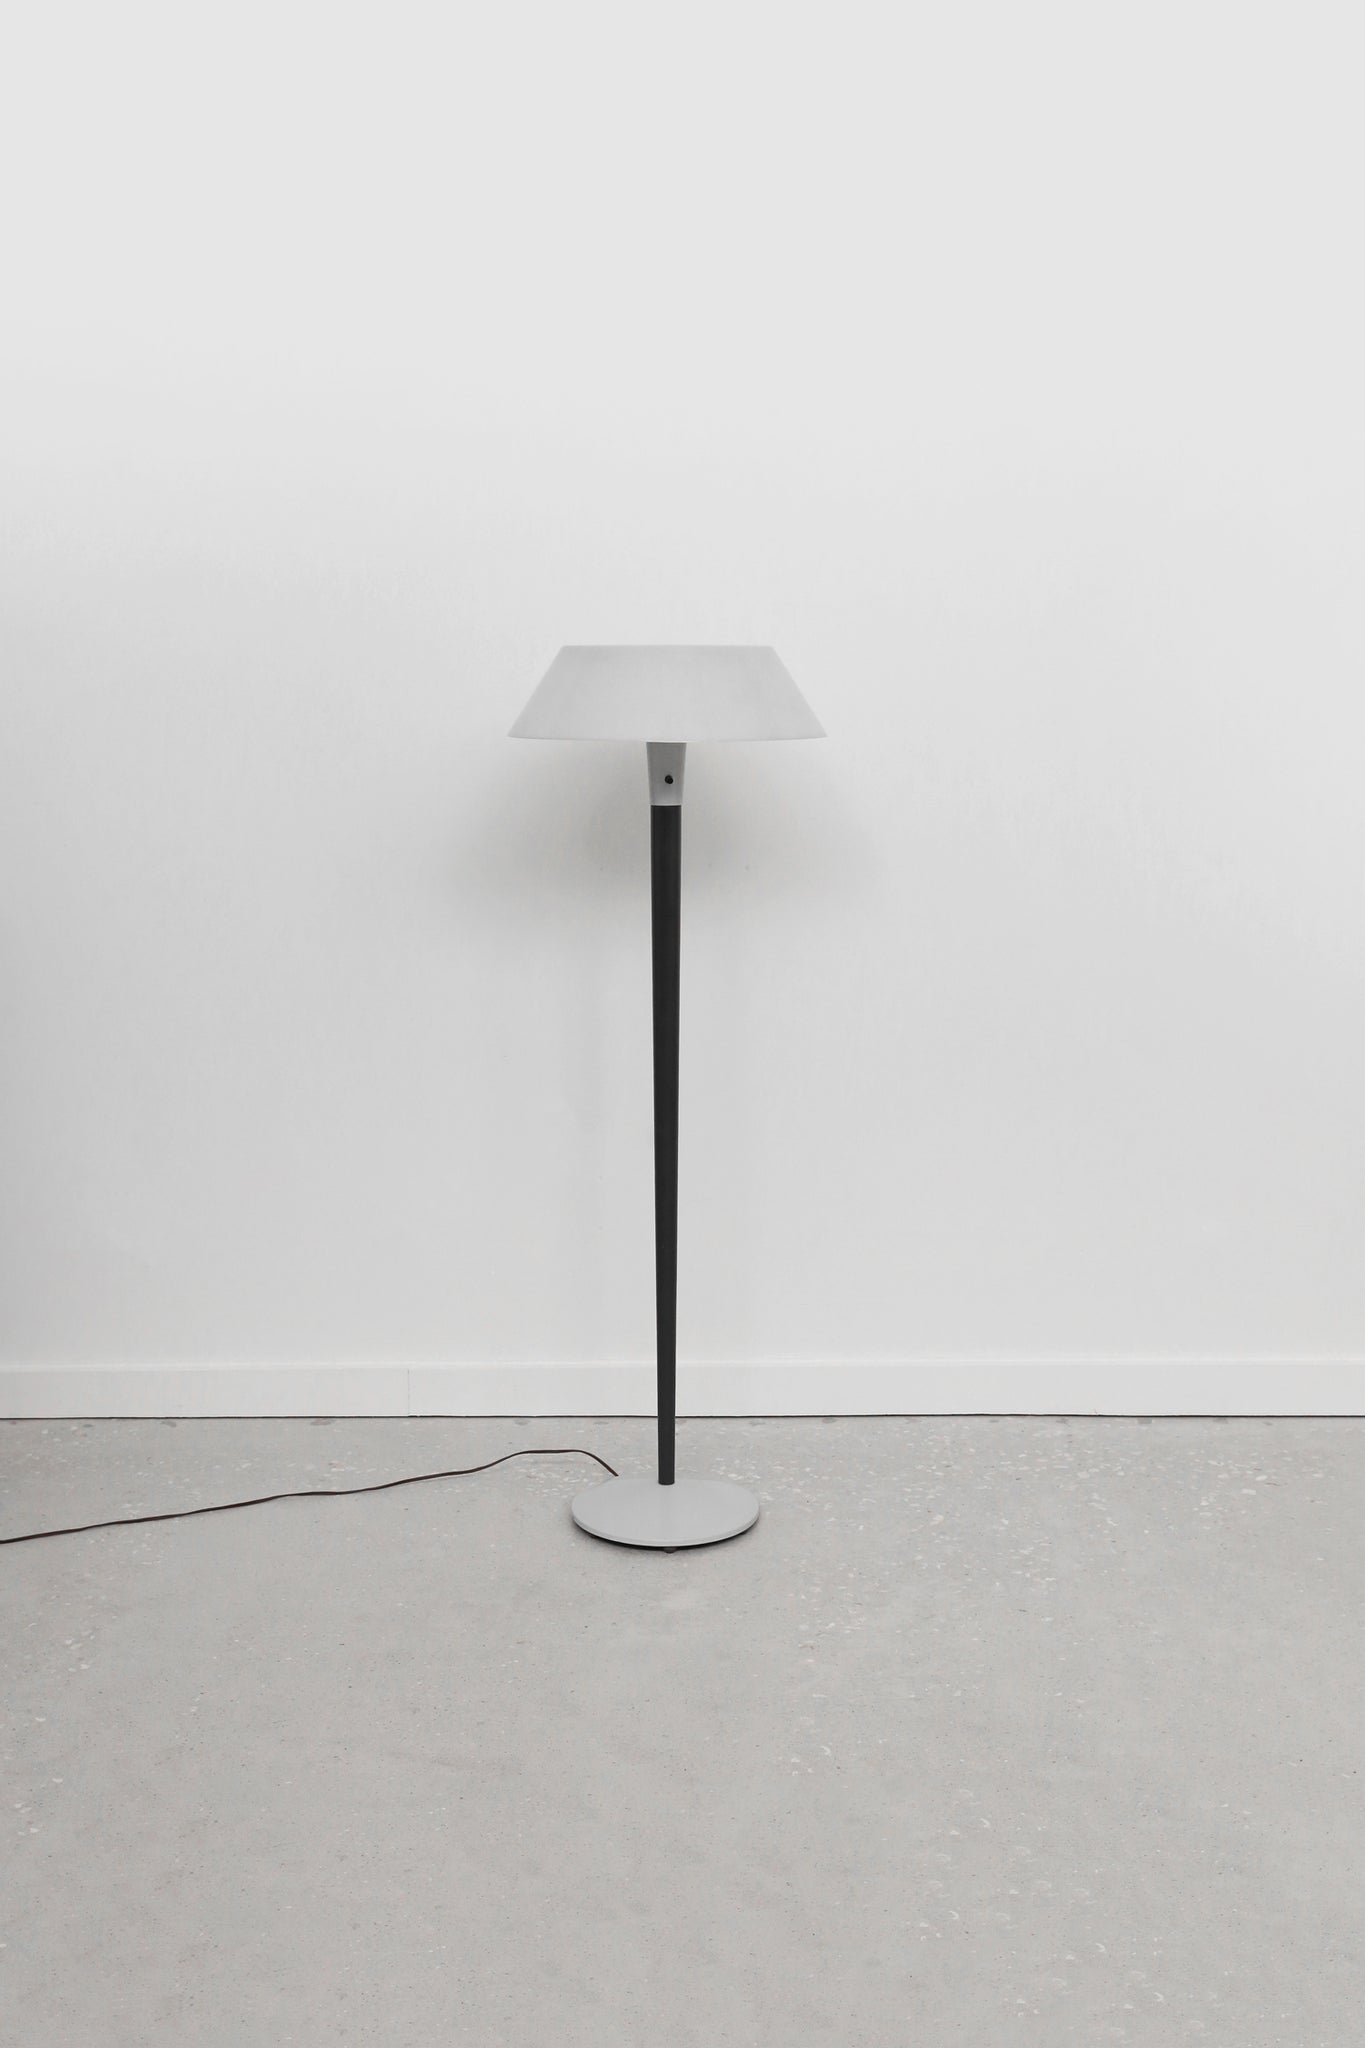 Gerald Thurston Floor Lamp